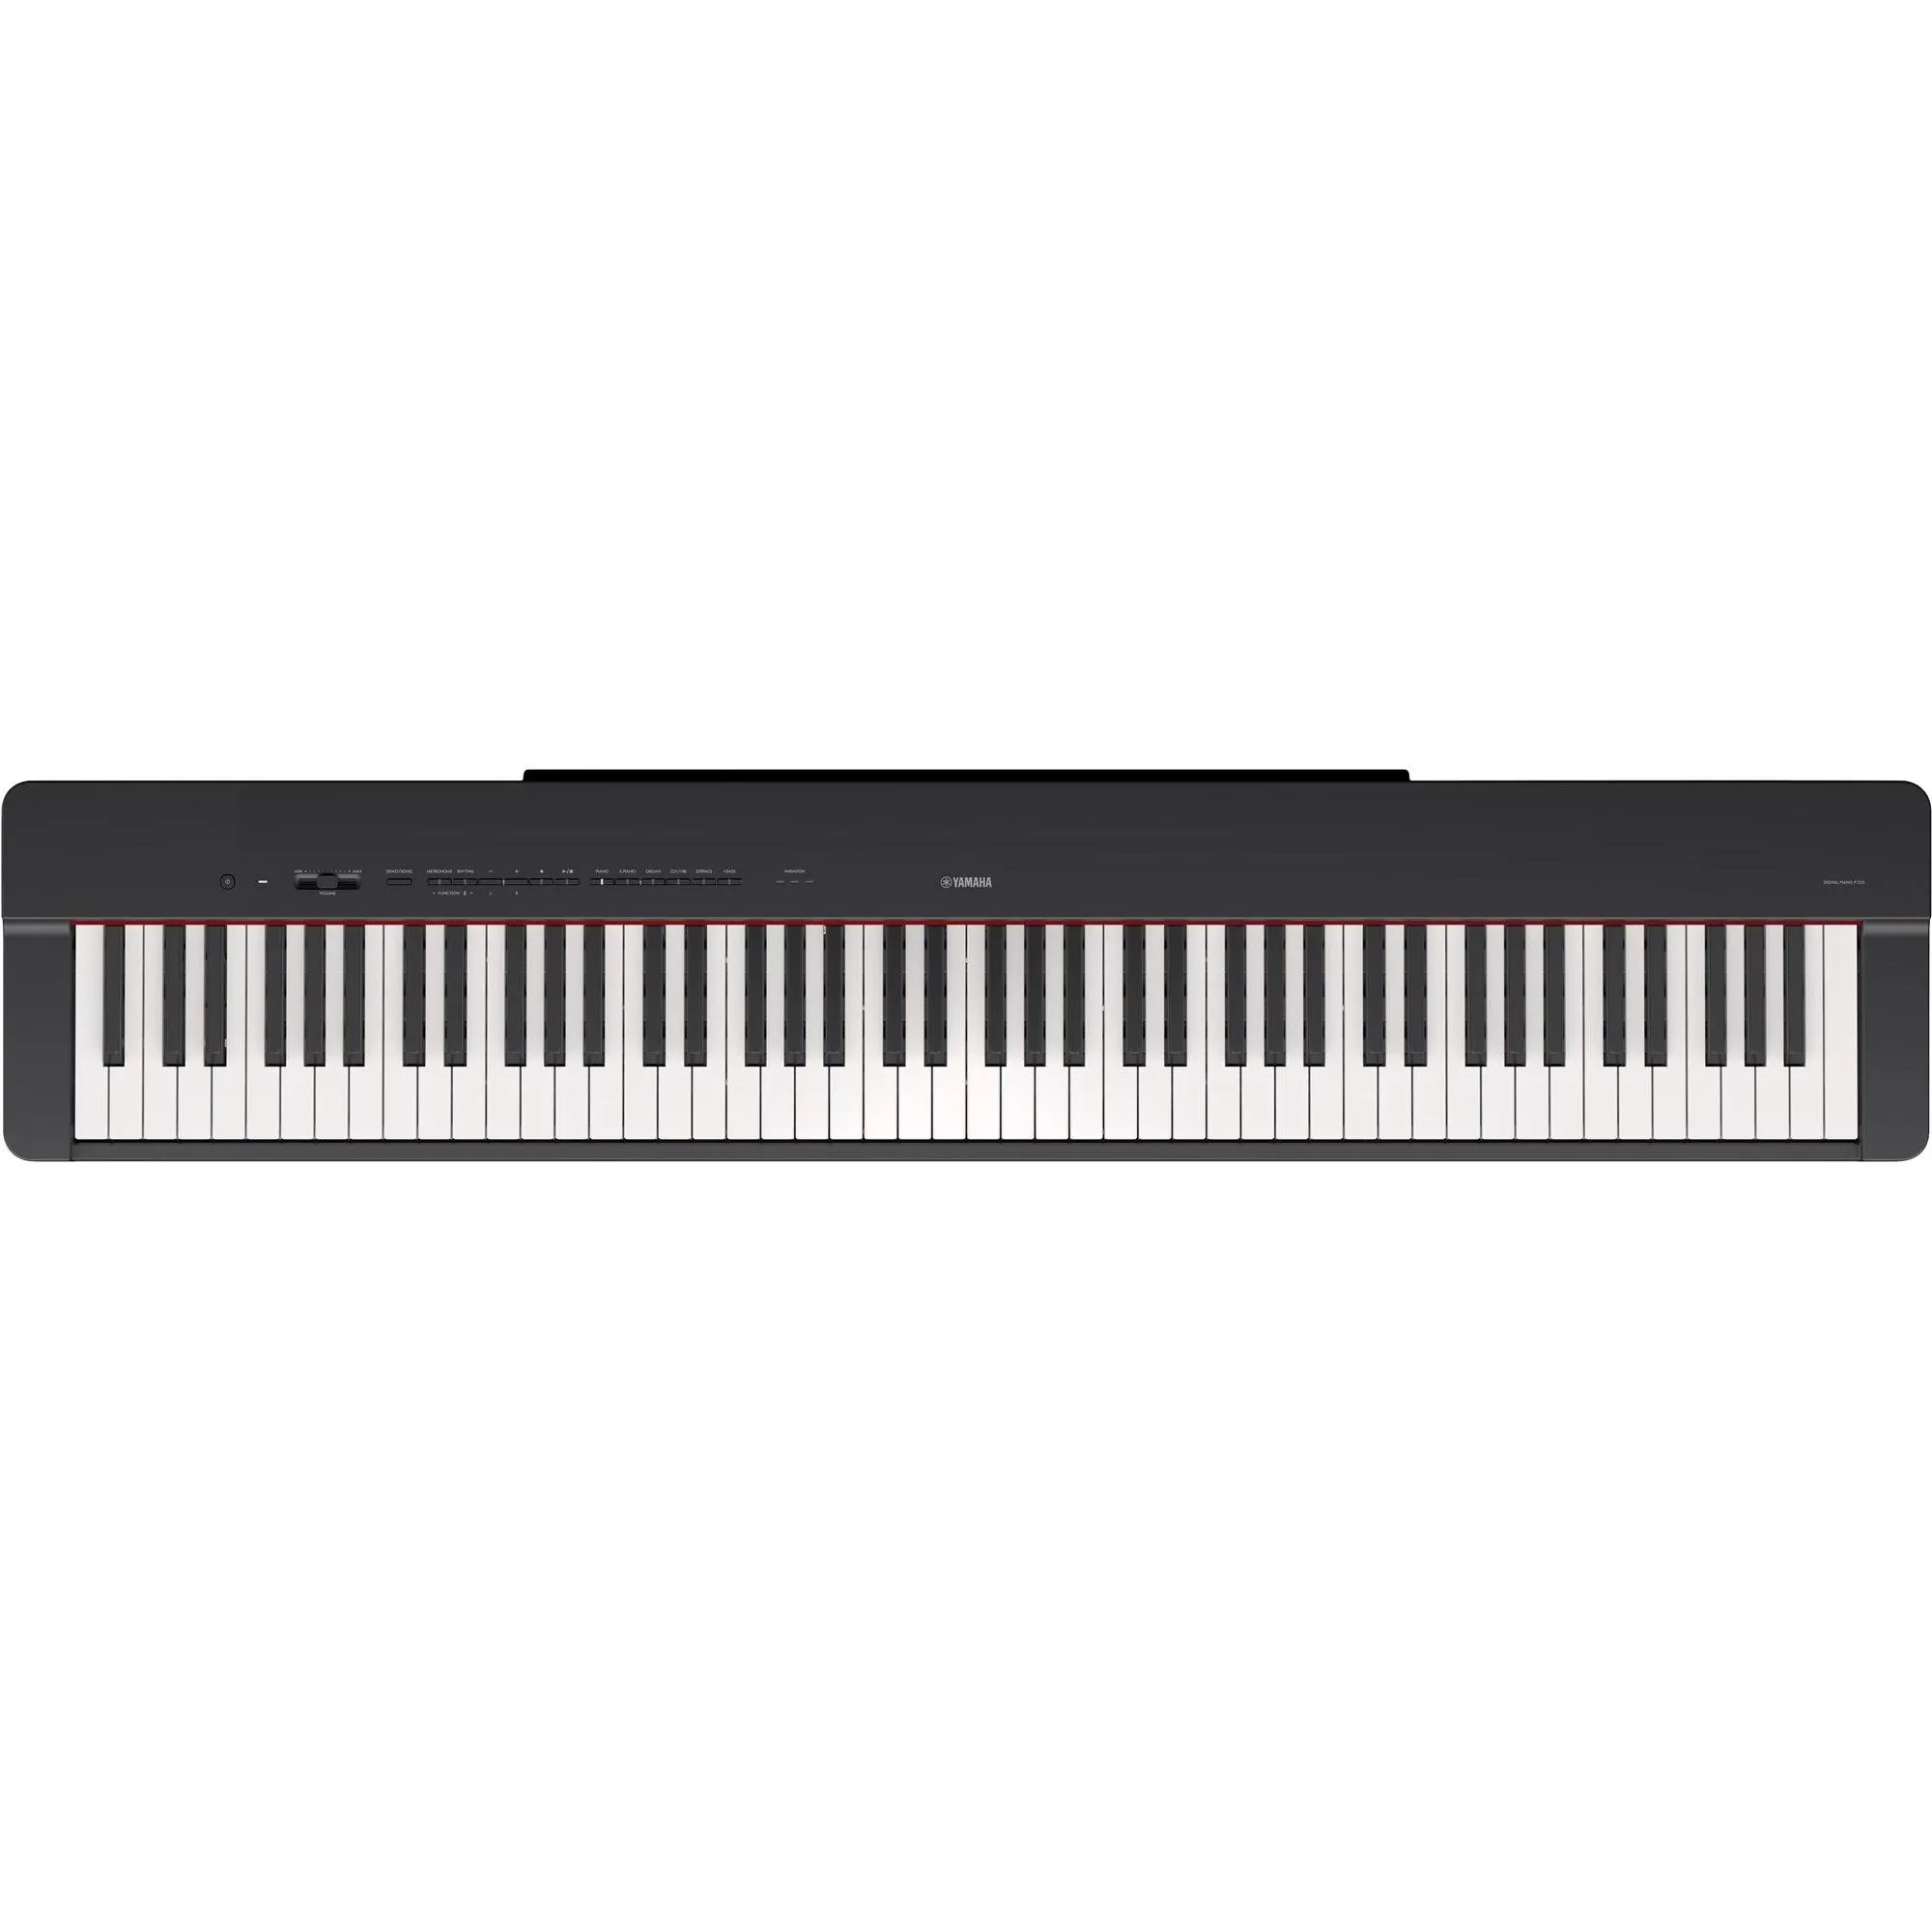 Piano Digital Yamaha P225 Preto por 5.045,99 à vista no boleto/pix ou parcele em até 12x sem juros. Compre na loja Mundomax!